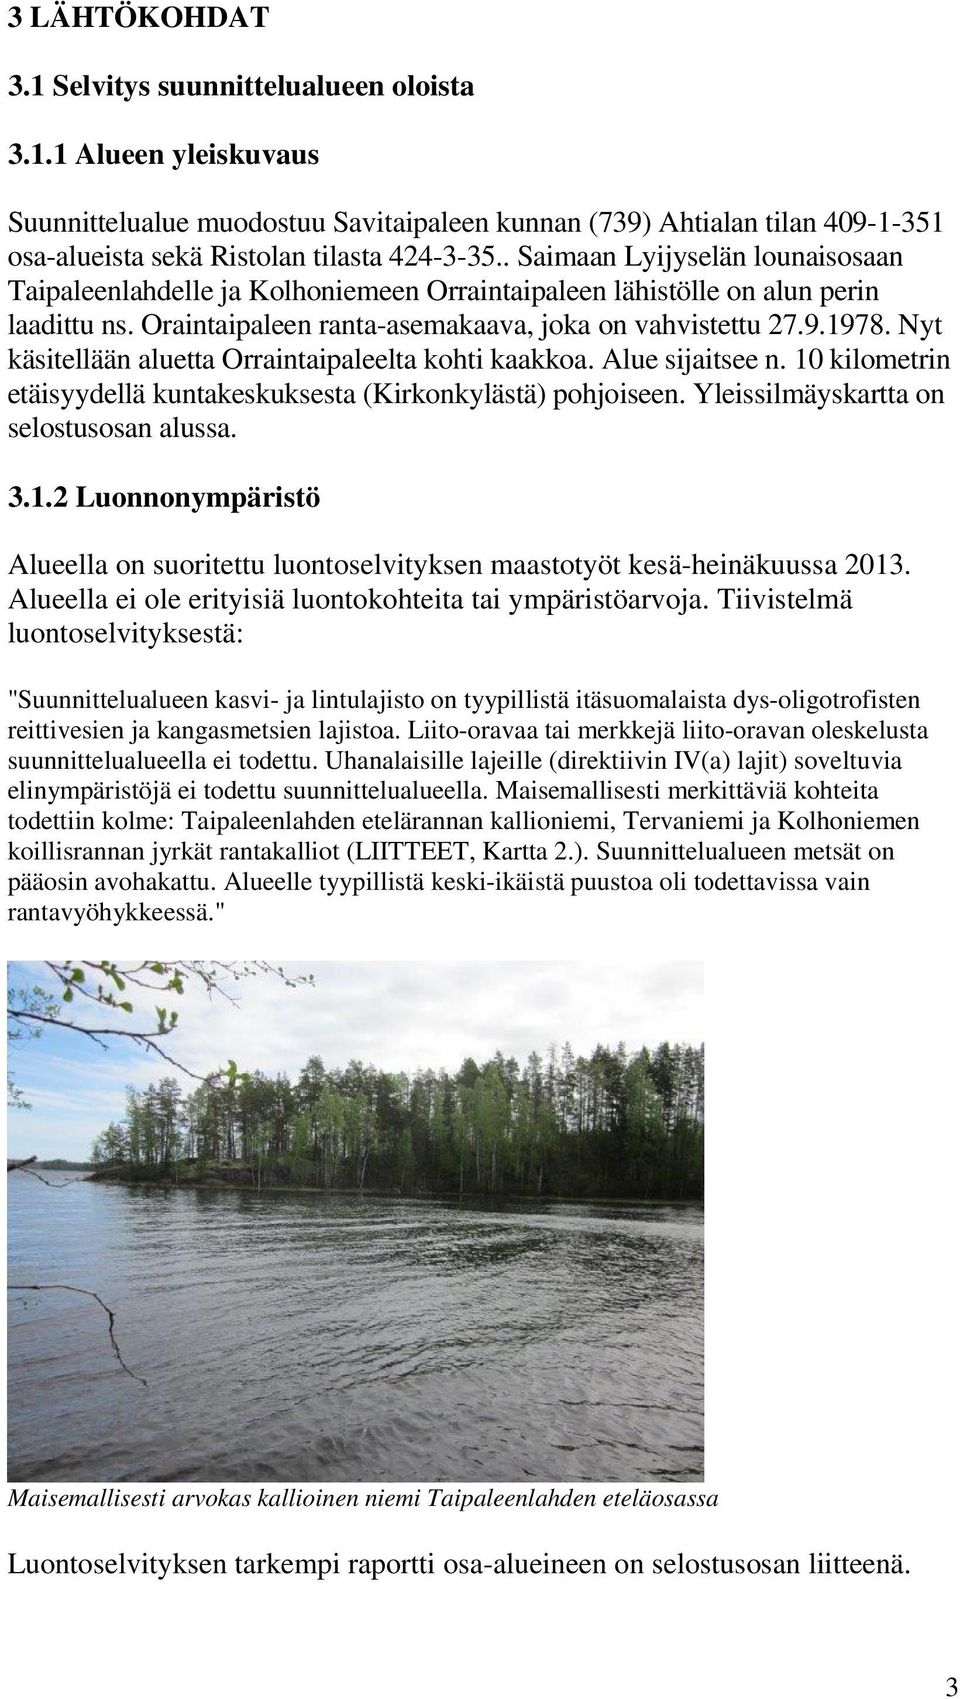 Nyt käsitellään aluetta Orraintaipaleelta kohti kaakkoa. Alue sijaitsee n. 10 kilometrin etäisyydellä kuntakeskuksesta (Kirkonkylästä) pohjoiseen. Yleissilmäyskartta on selostusosan alussa. 3.1.2 Luonnonympäristö Alueella on suoritettu luontoselvityksen maastotyöt kesä-heinäkuussa 2013.